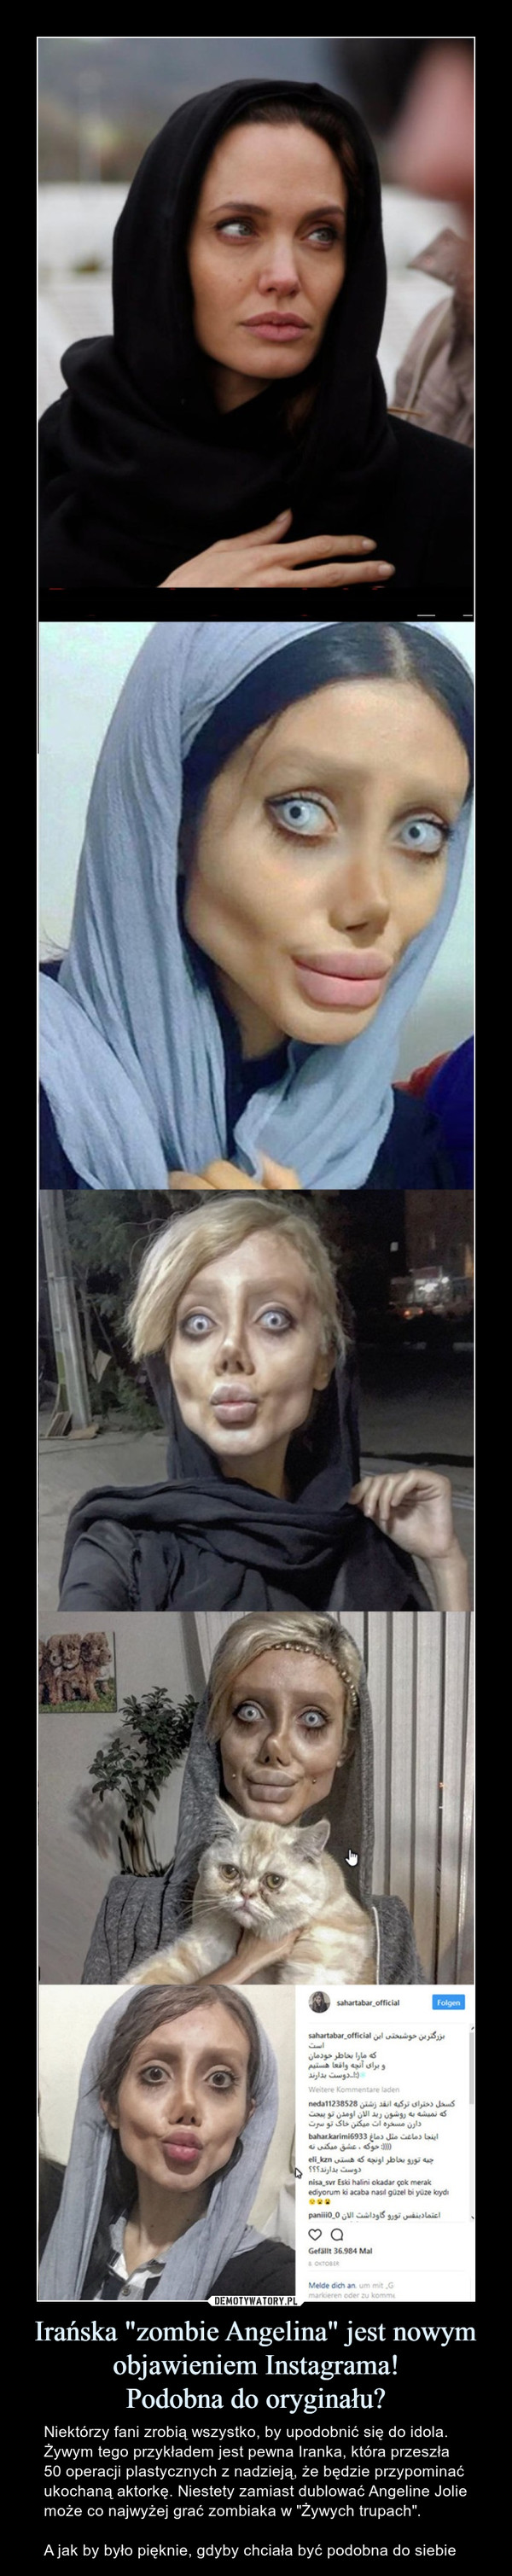 Irańska "zombie Angelina" jest nowym objawieniem Instagrama!Podobna do oryginału? – Niektórzy fani zrobią wszystko, by upodobnić się do idola. Żywym tego przykładem jest pewna Iranka, która przeszła 50 operacji plastycznych z nadzieją, że będzie przypominać ukochaną aktorkę. Niestety zamiast dublować Angeline Jolie może co najwyżej grać zombiaka w "Żywych trupach".A jak by było pięknie, gdyby chciała być podobna do siebie 